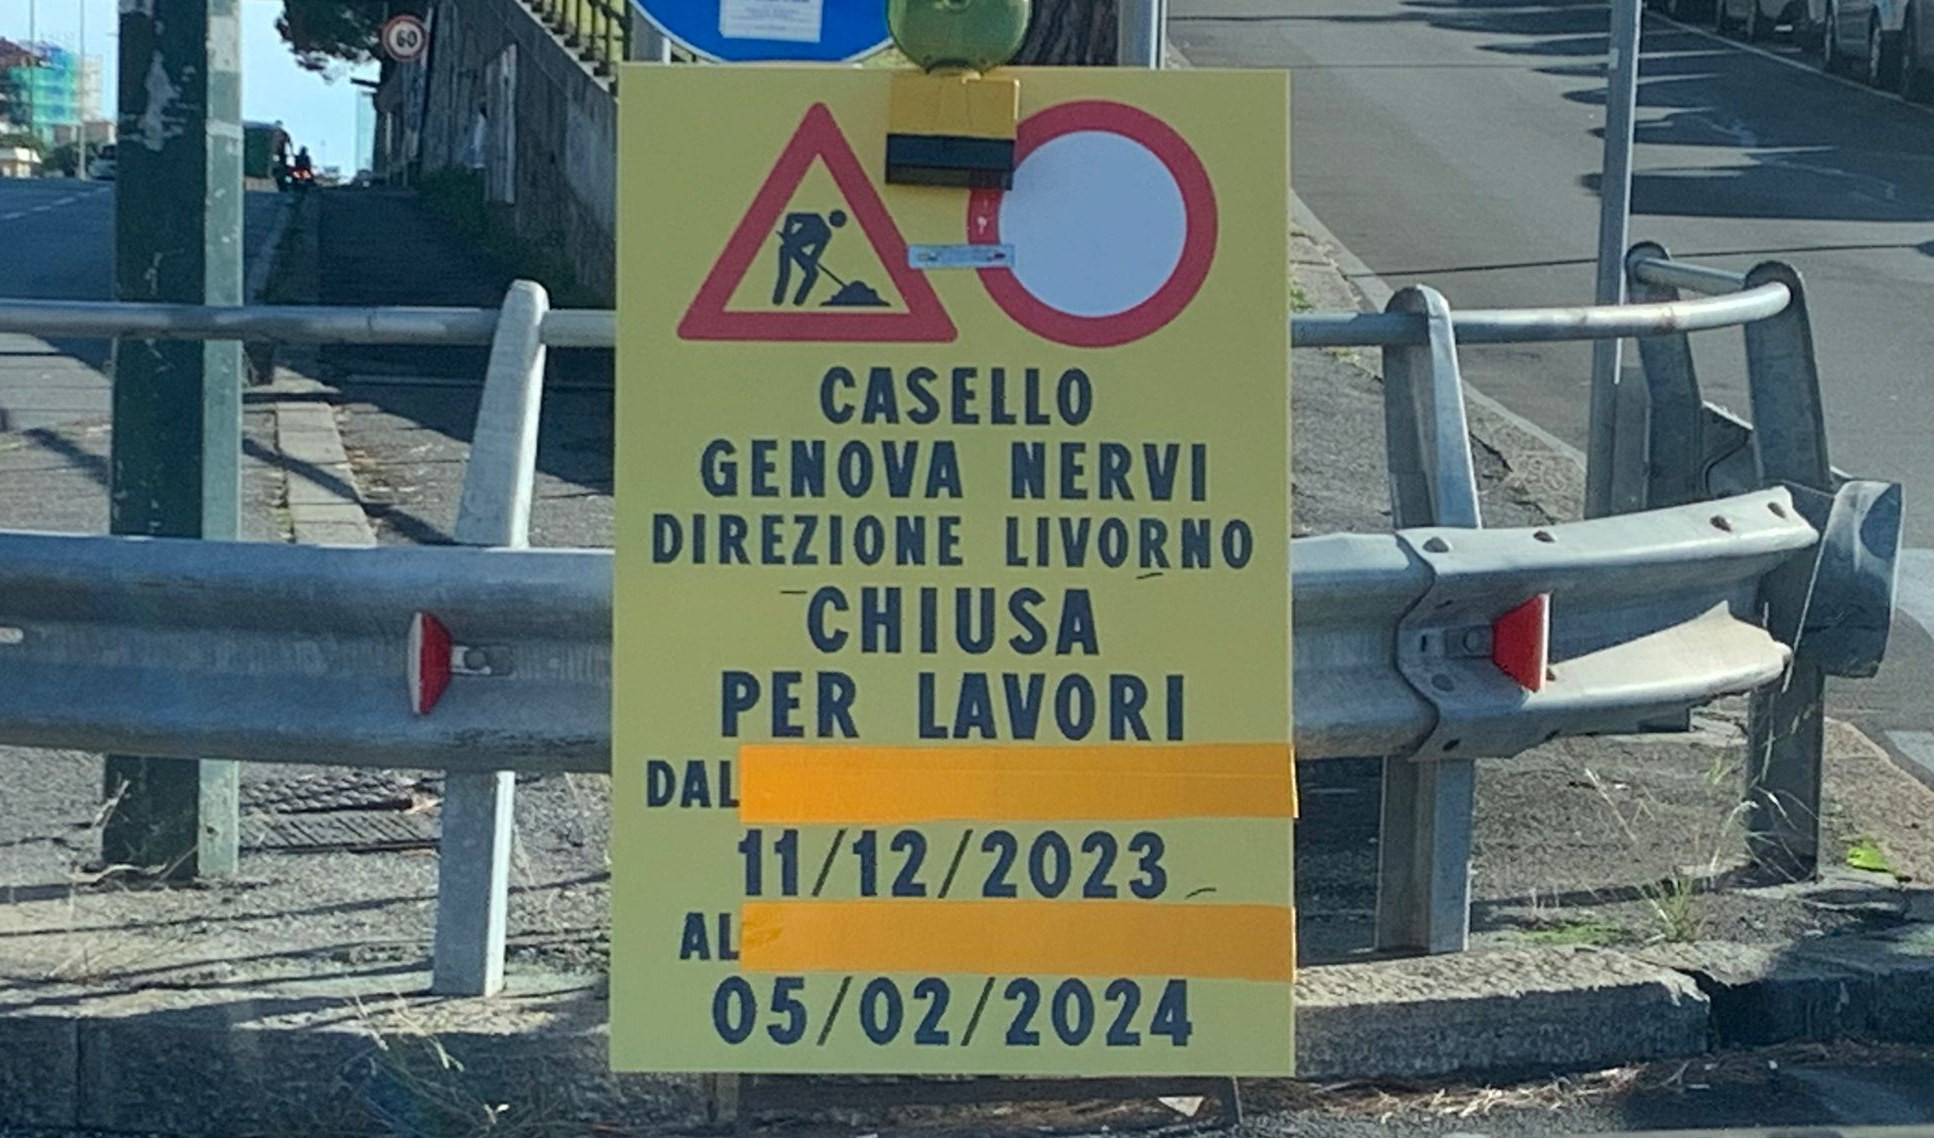 Genova Nervi, ecco i cartelli modificati dopo la segnalazione di Primocanale